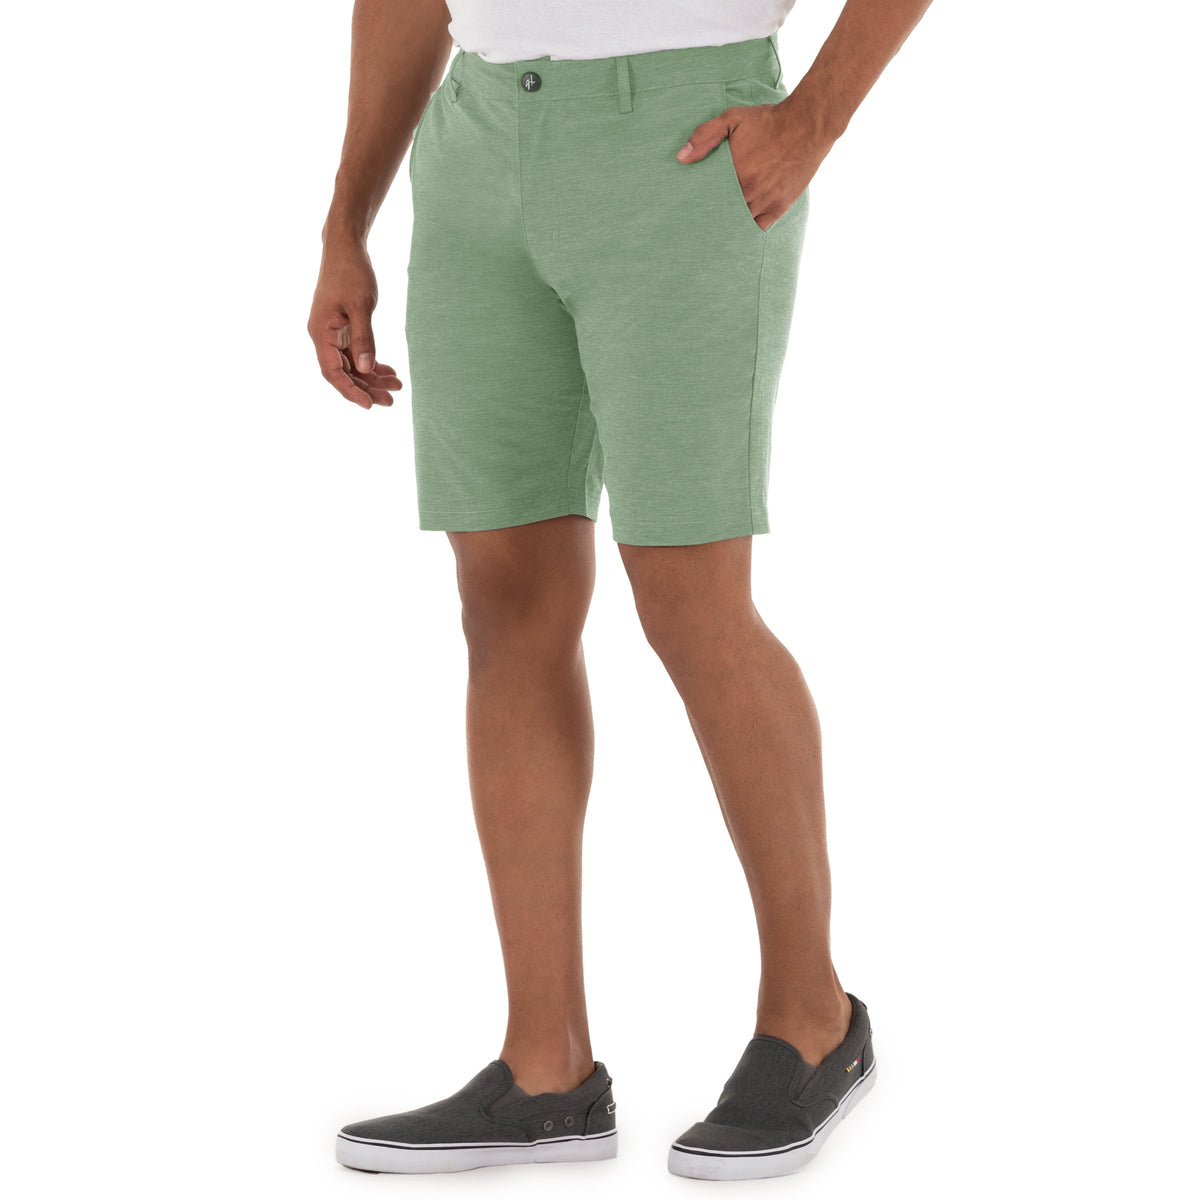 Men's 9" Hybrid Performance Green Walking Short